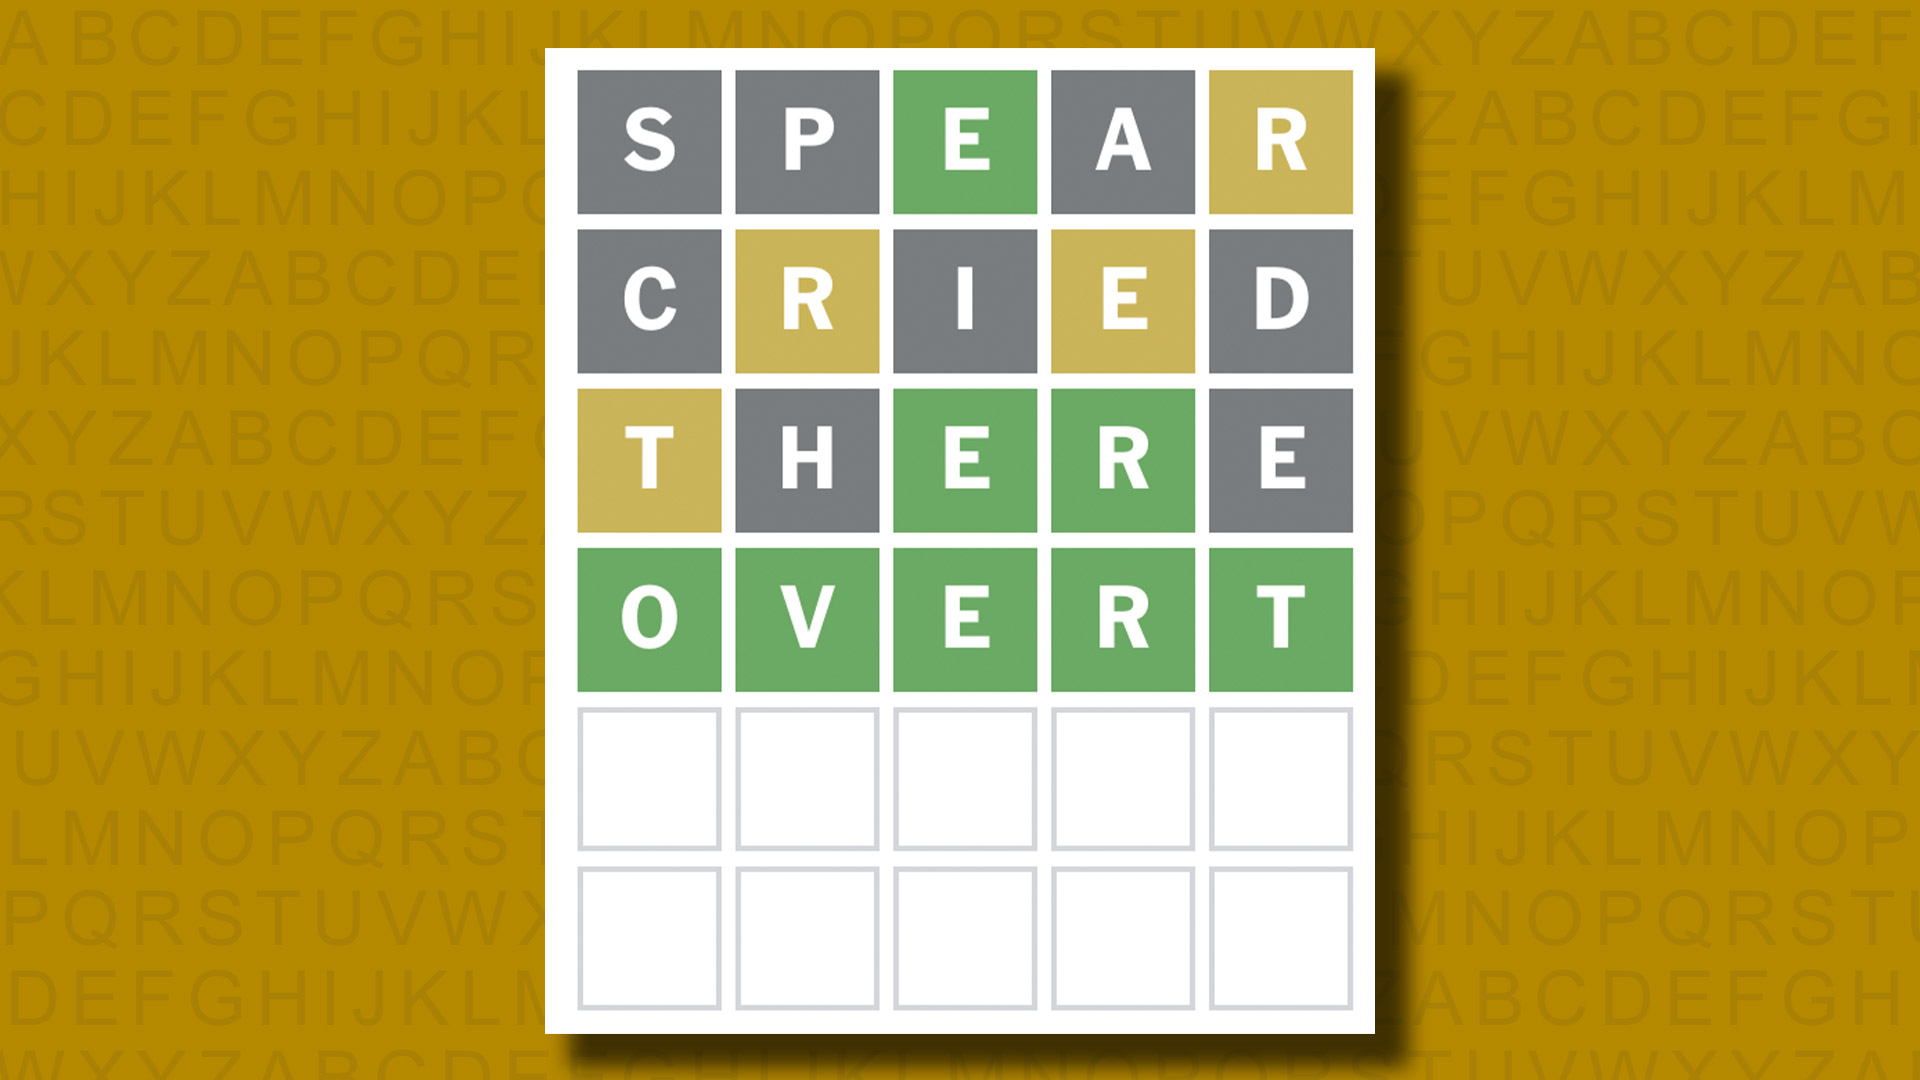 Ответ в формате Word для игры 1040 на желтом фоне